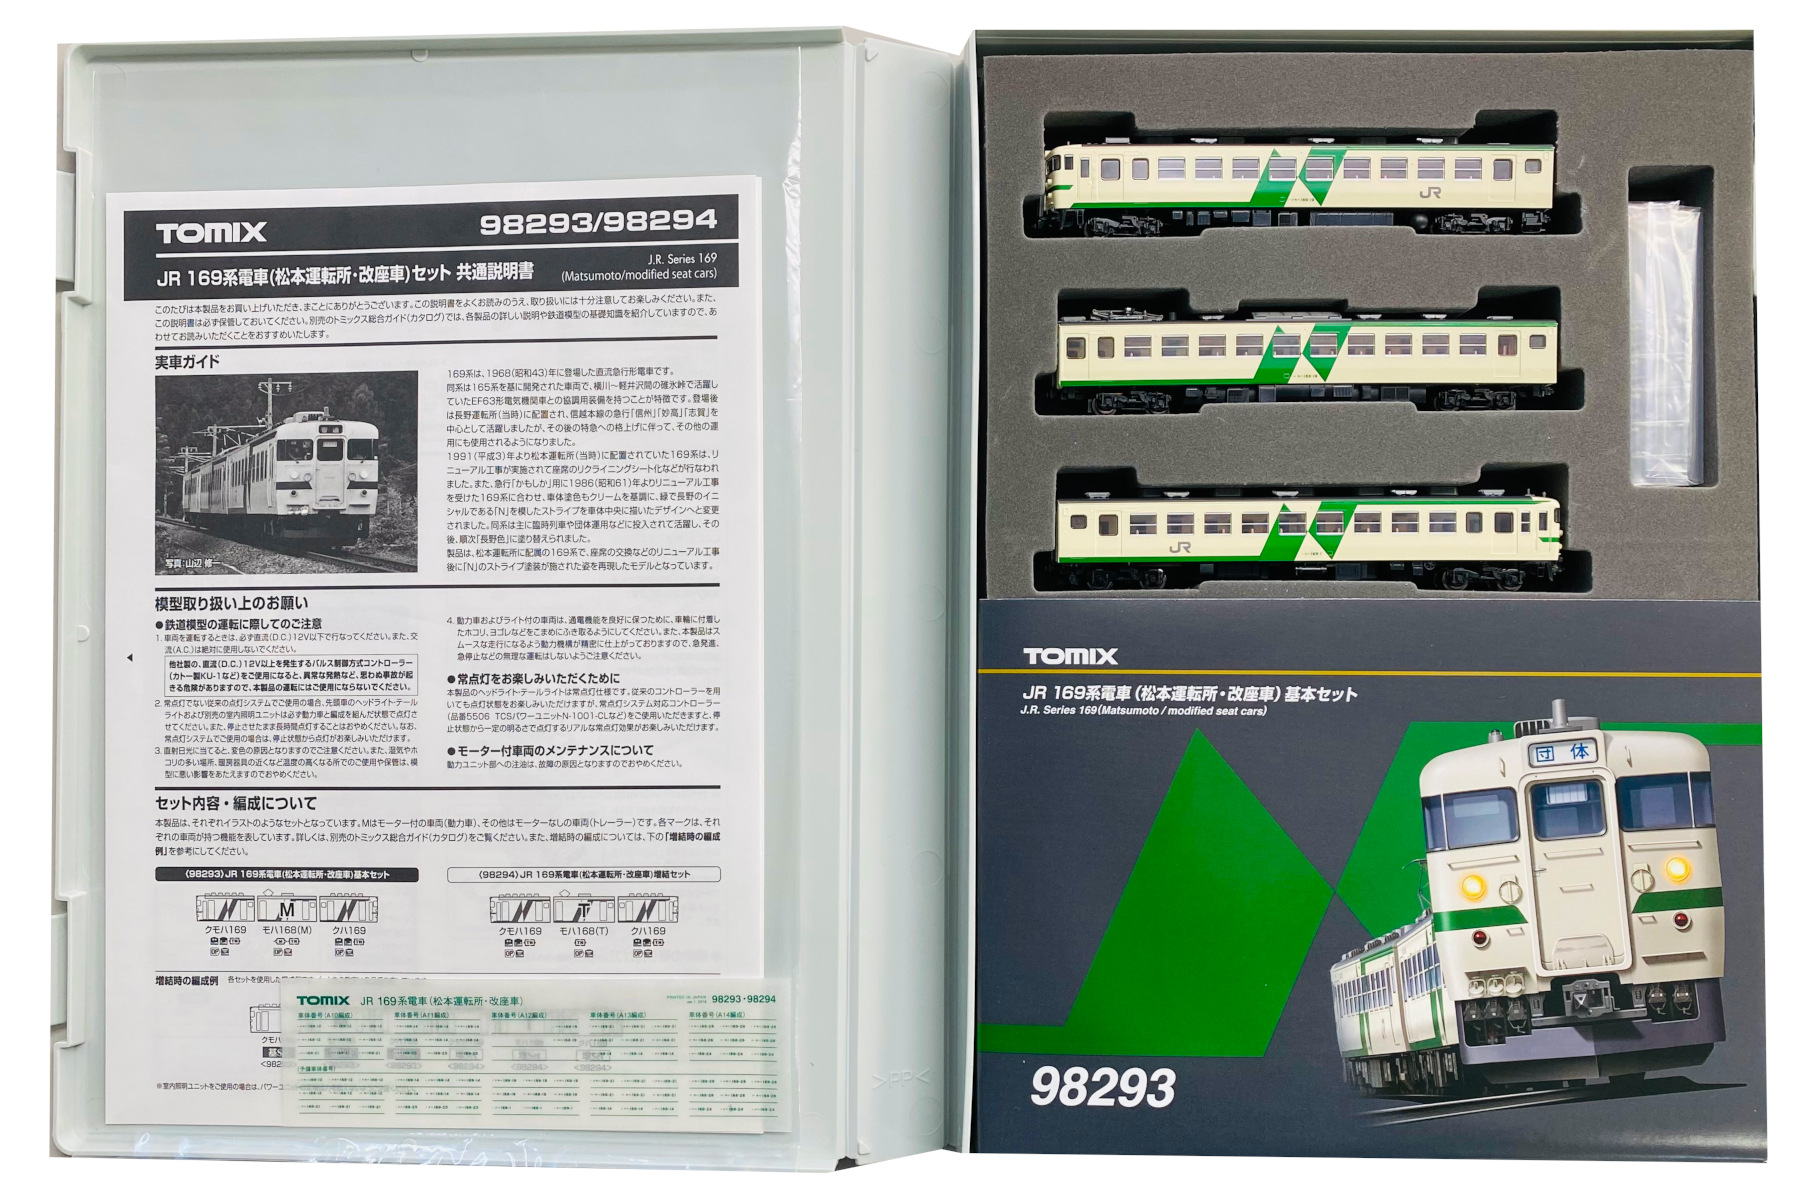 Nゲージ TOMIX 98293 JR 169系電車(松本運転所・改座車)基本セット 店舗受取可 - 鉄道模型